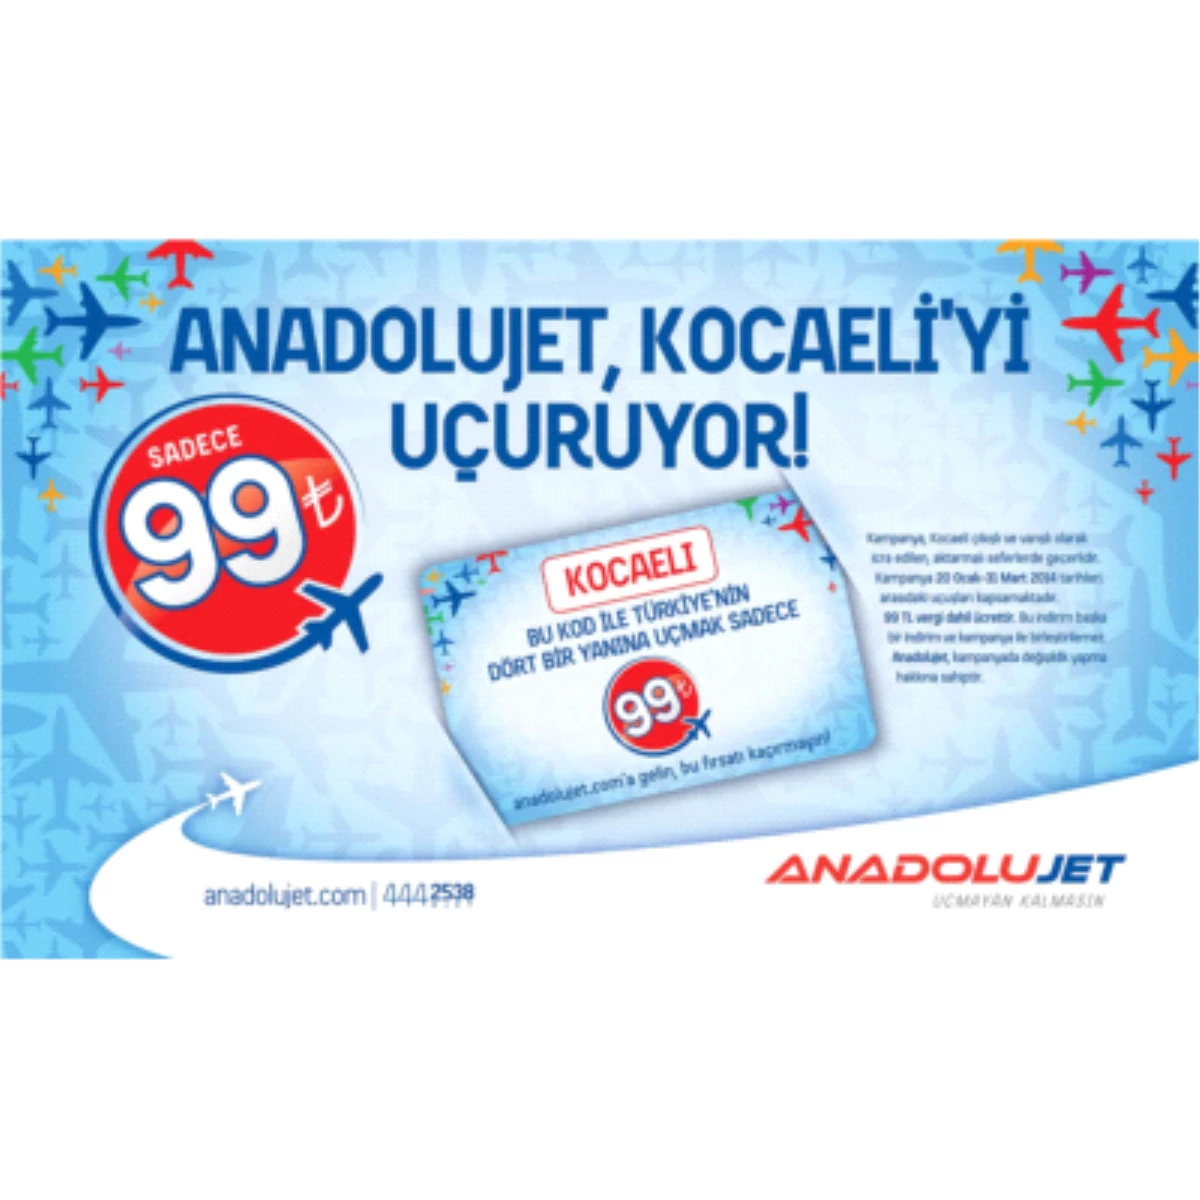 Anadolujet\'in Kocaeli Aktarma Kampanyası ile 99 TL\'ye Uçmayan Kalmayacak